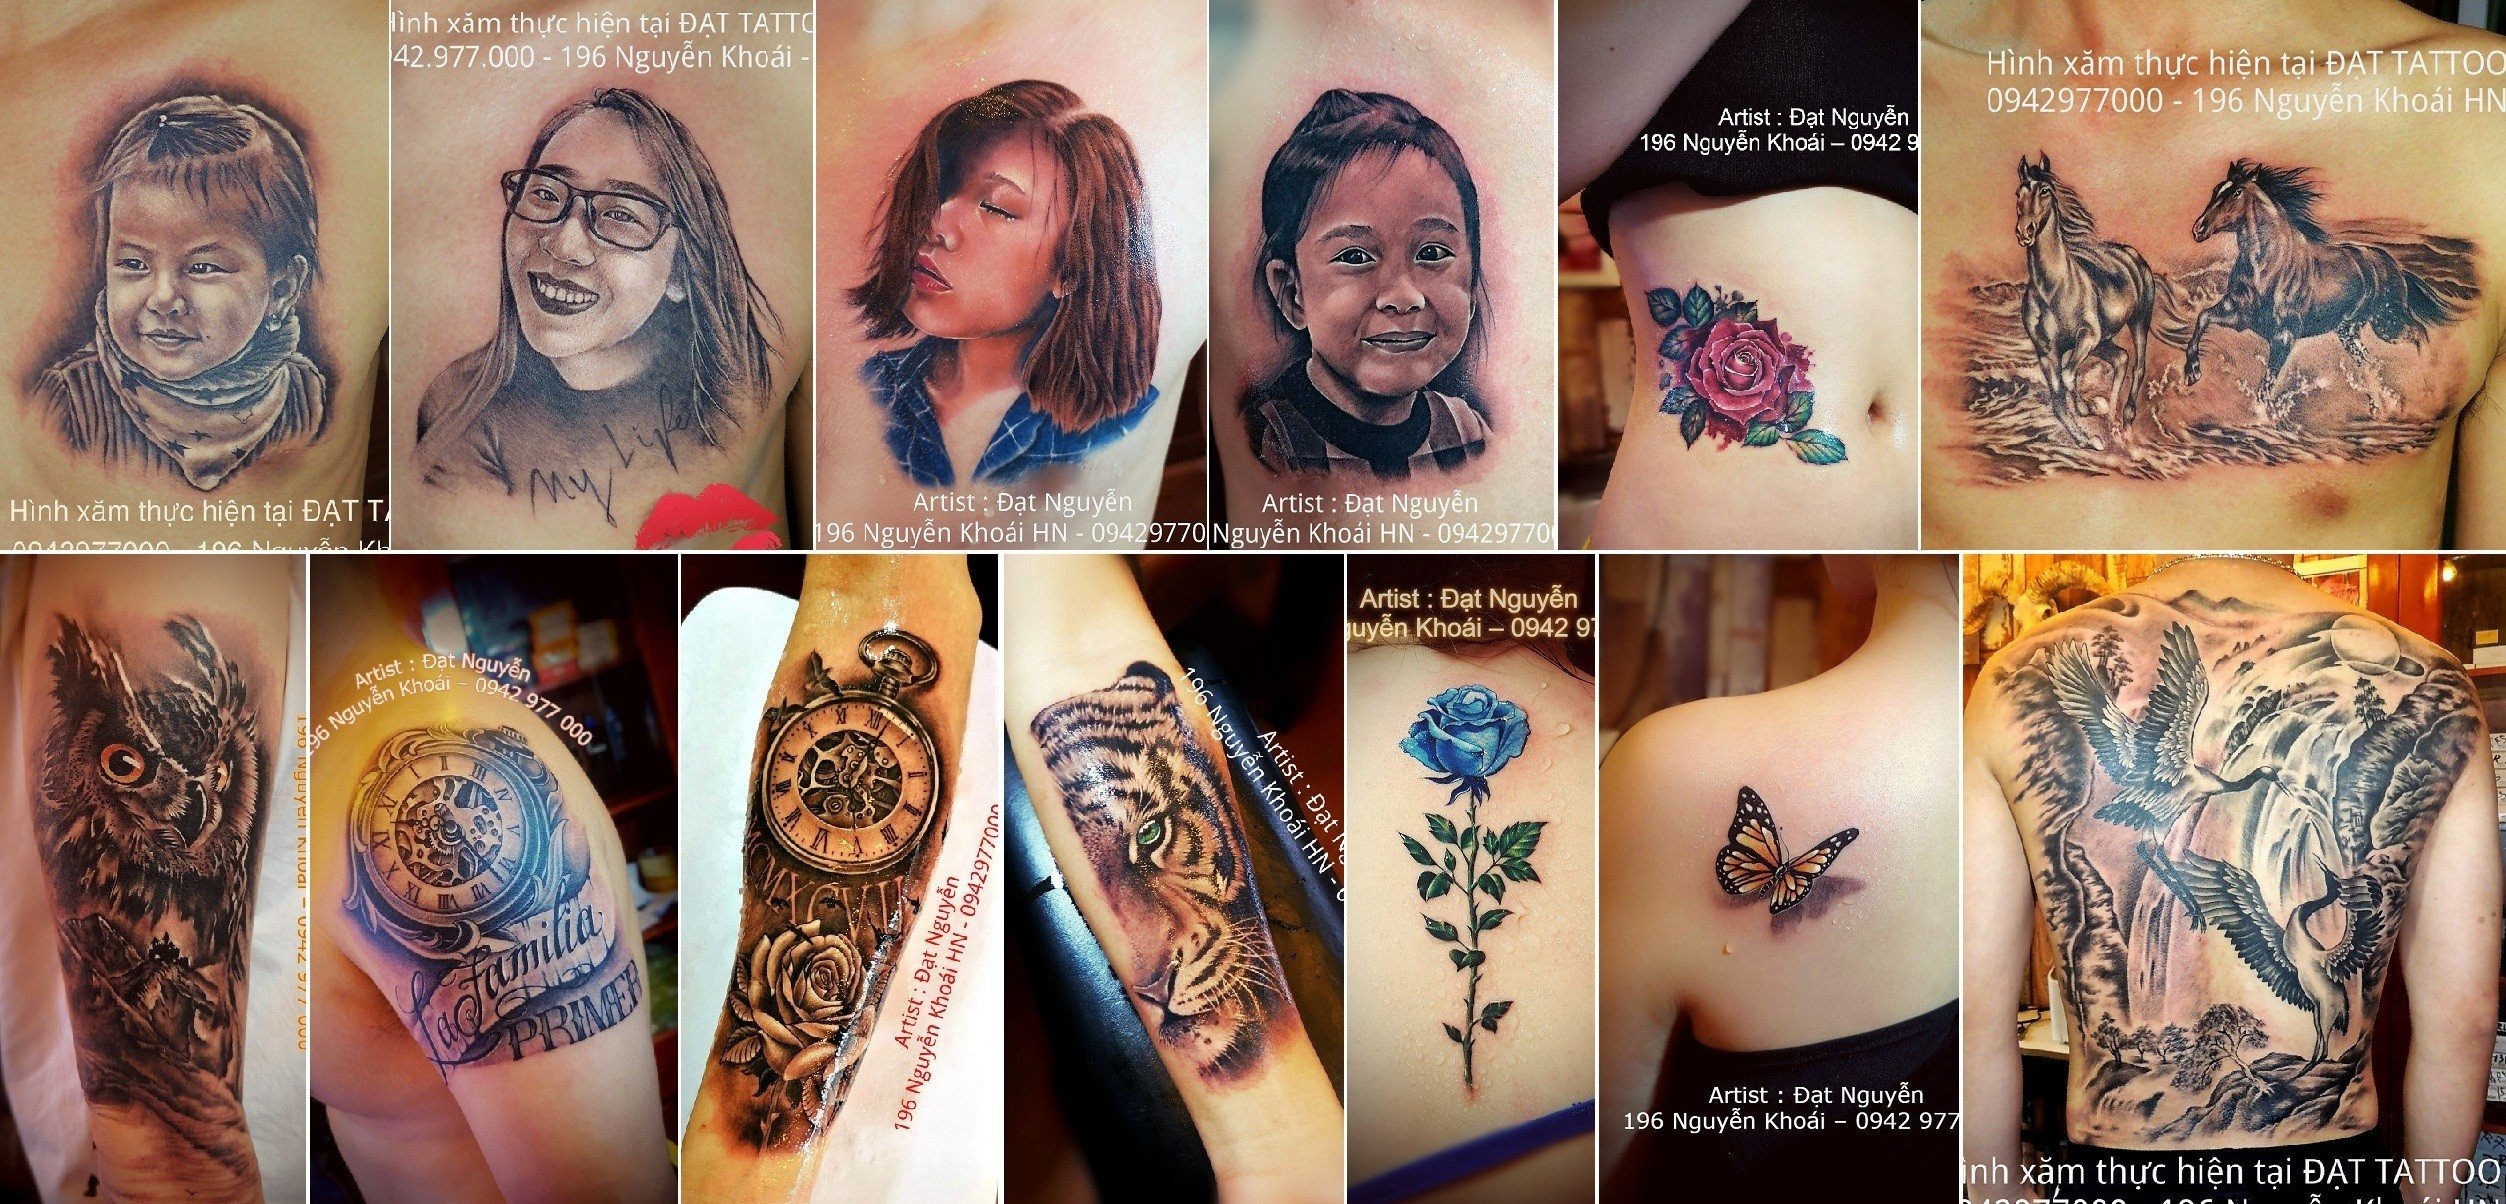 Các mẫu xăm nghệ thuật tại Đạt Tattoo